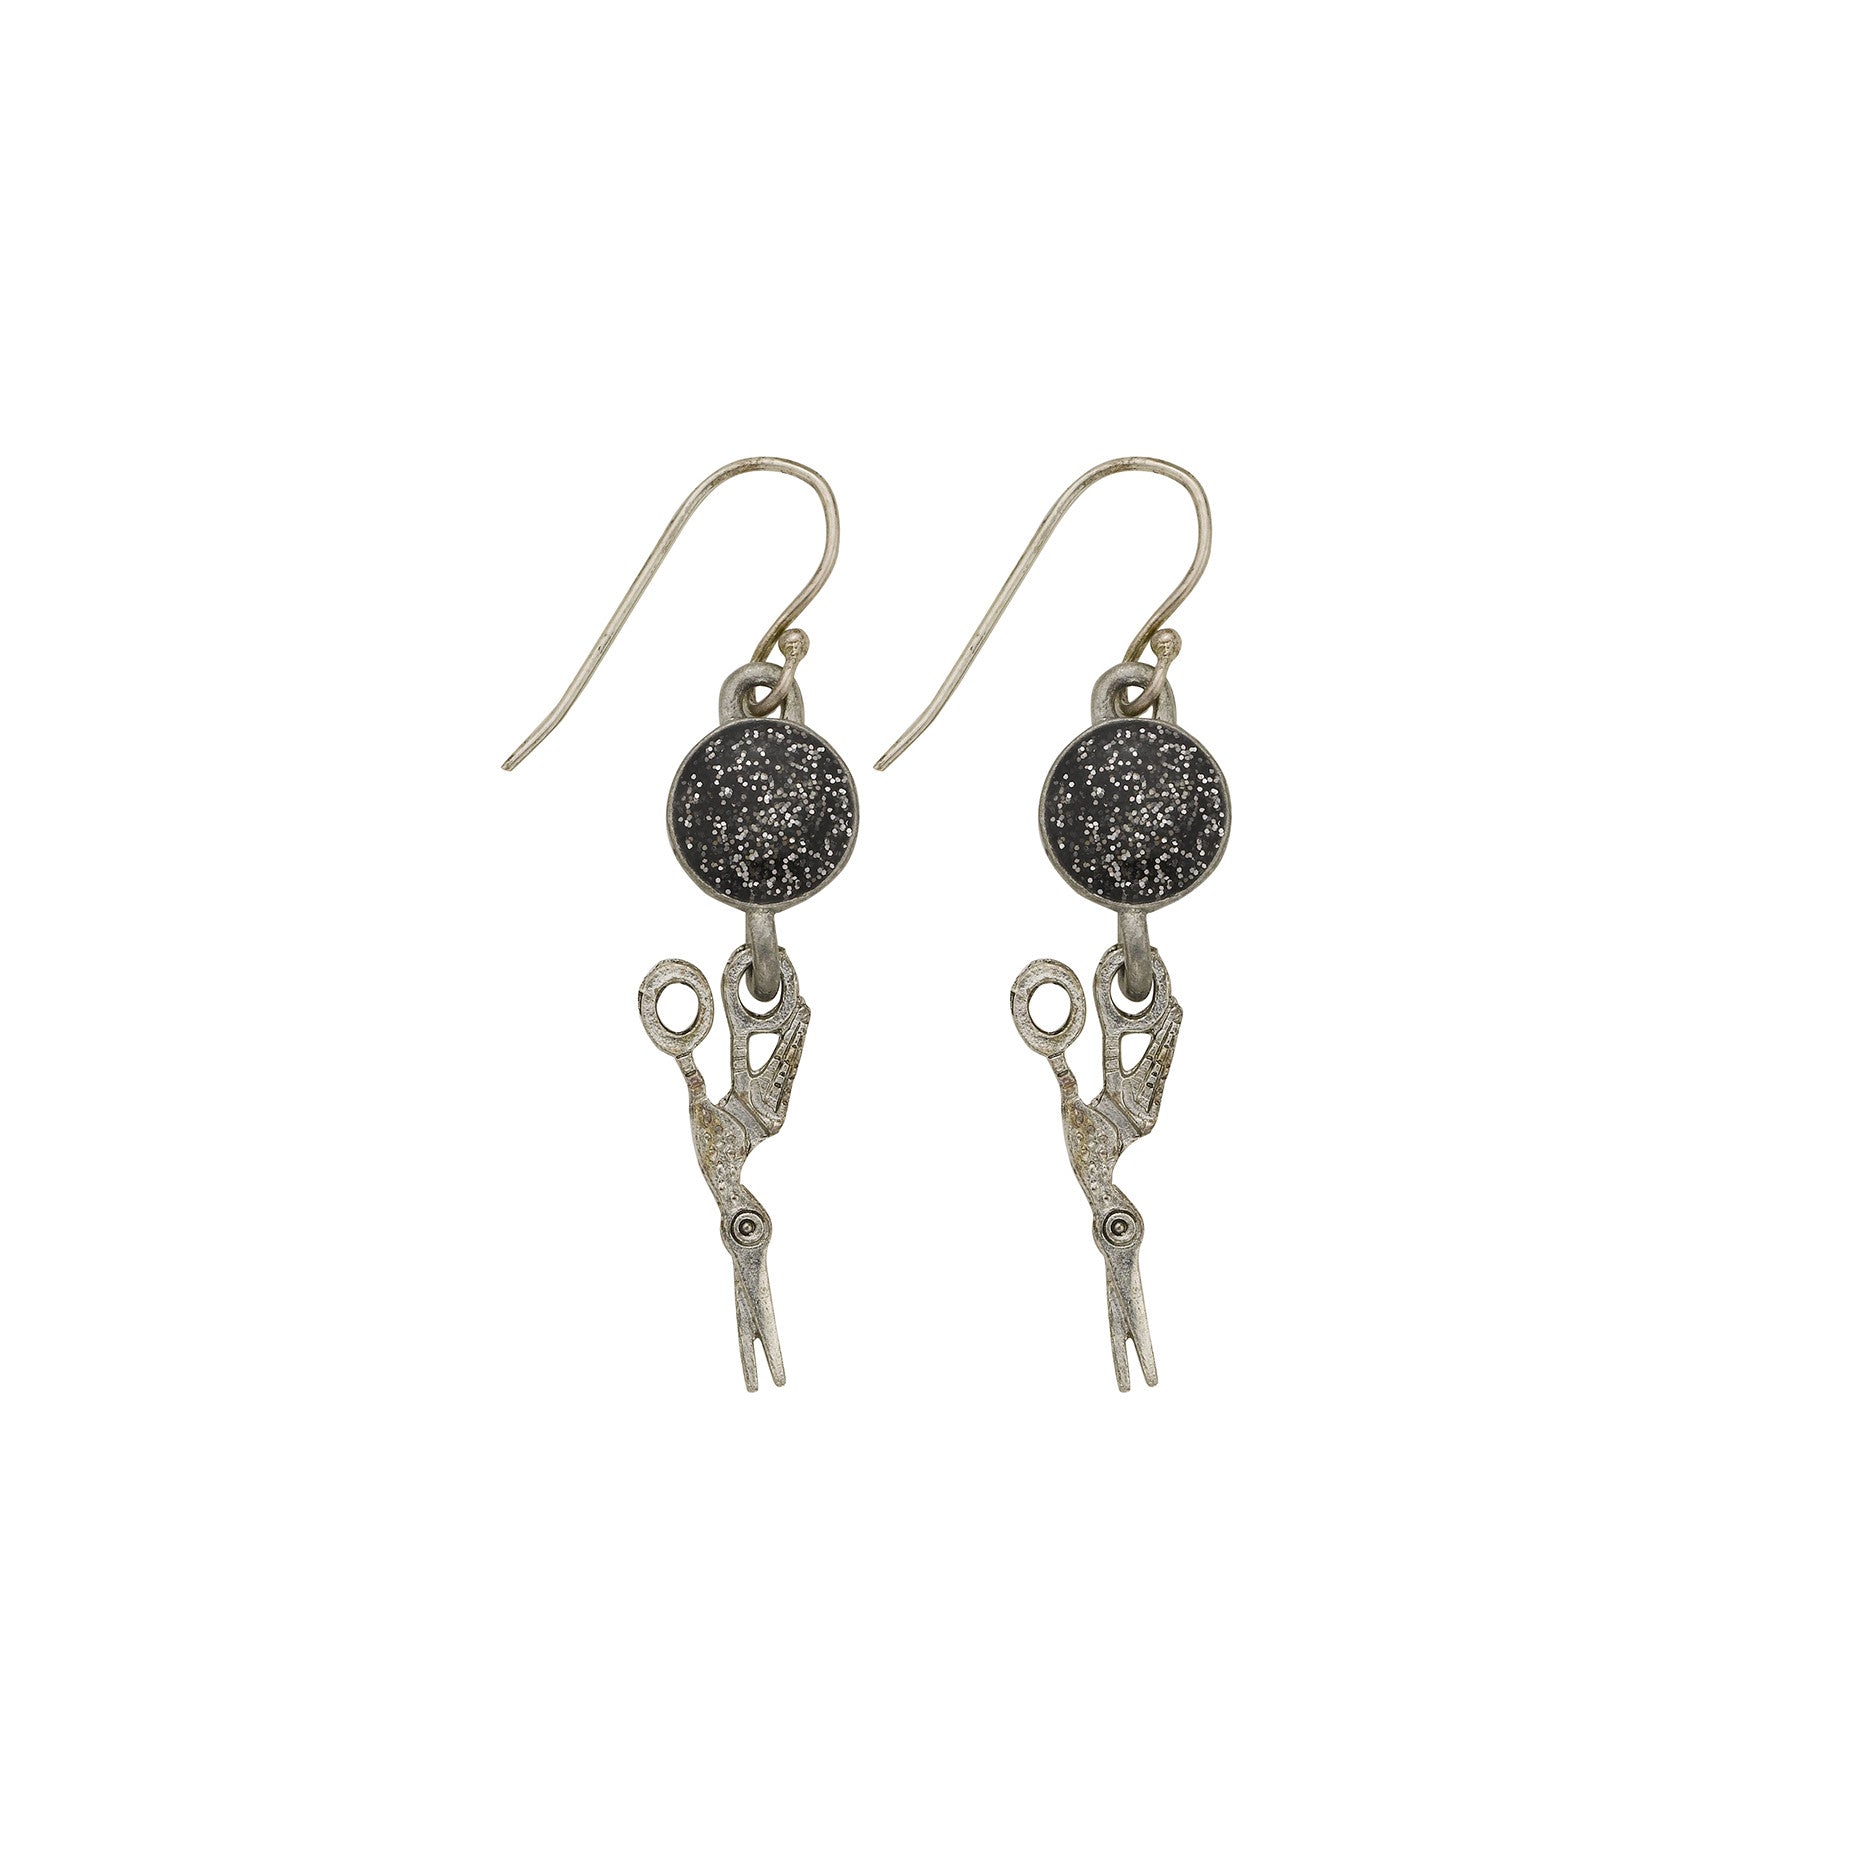 Black Stork Earrings | SamandNan.com | Expandable Charm Bangle ...